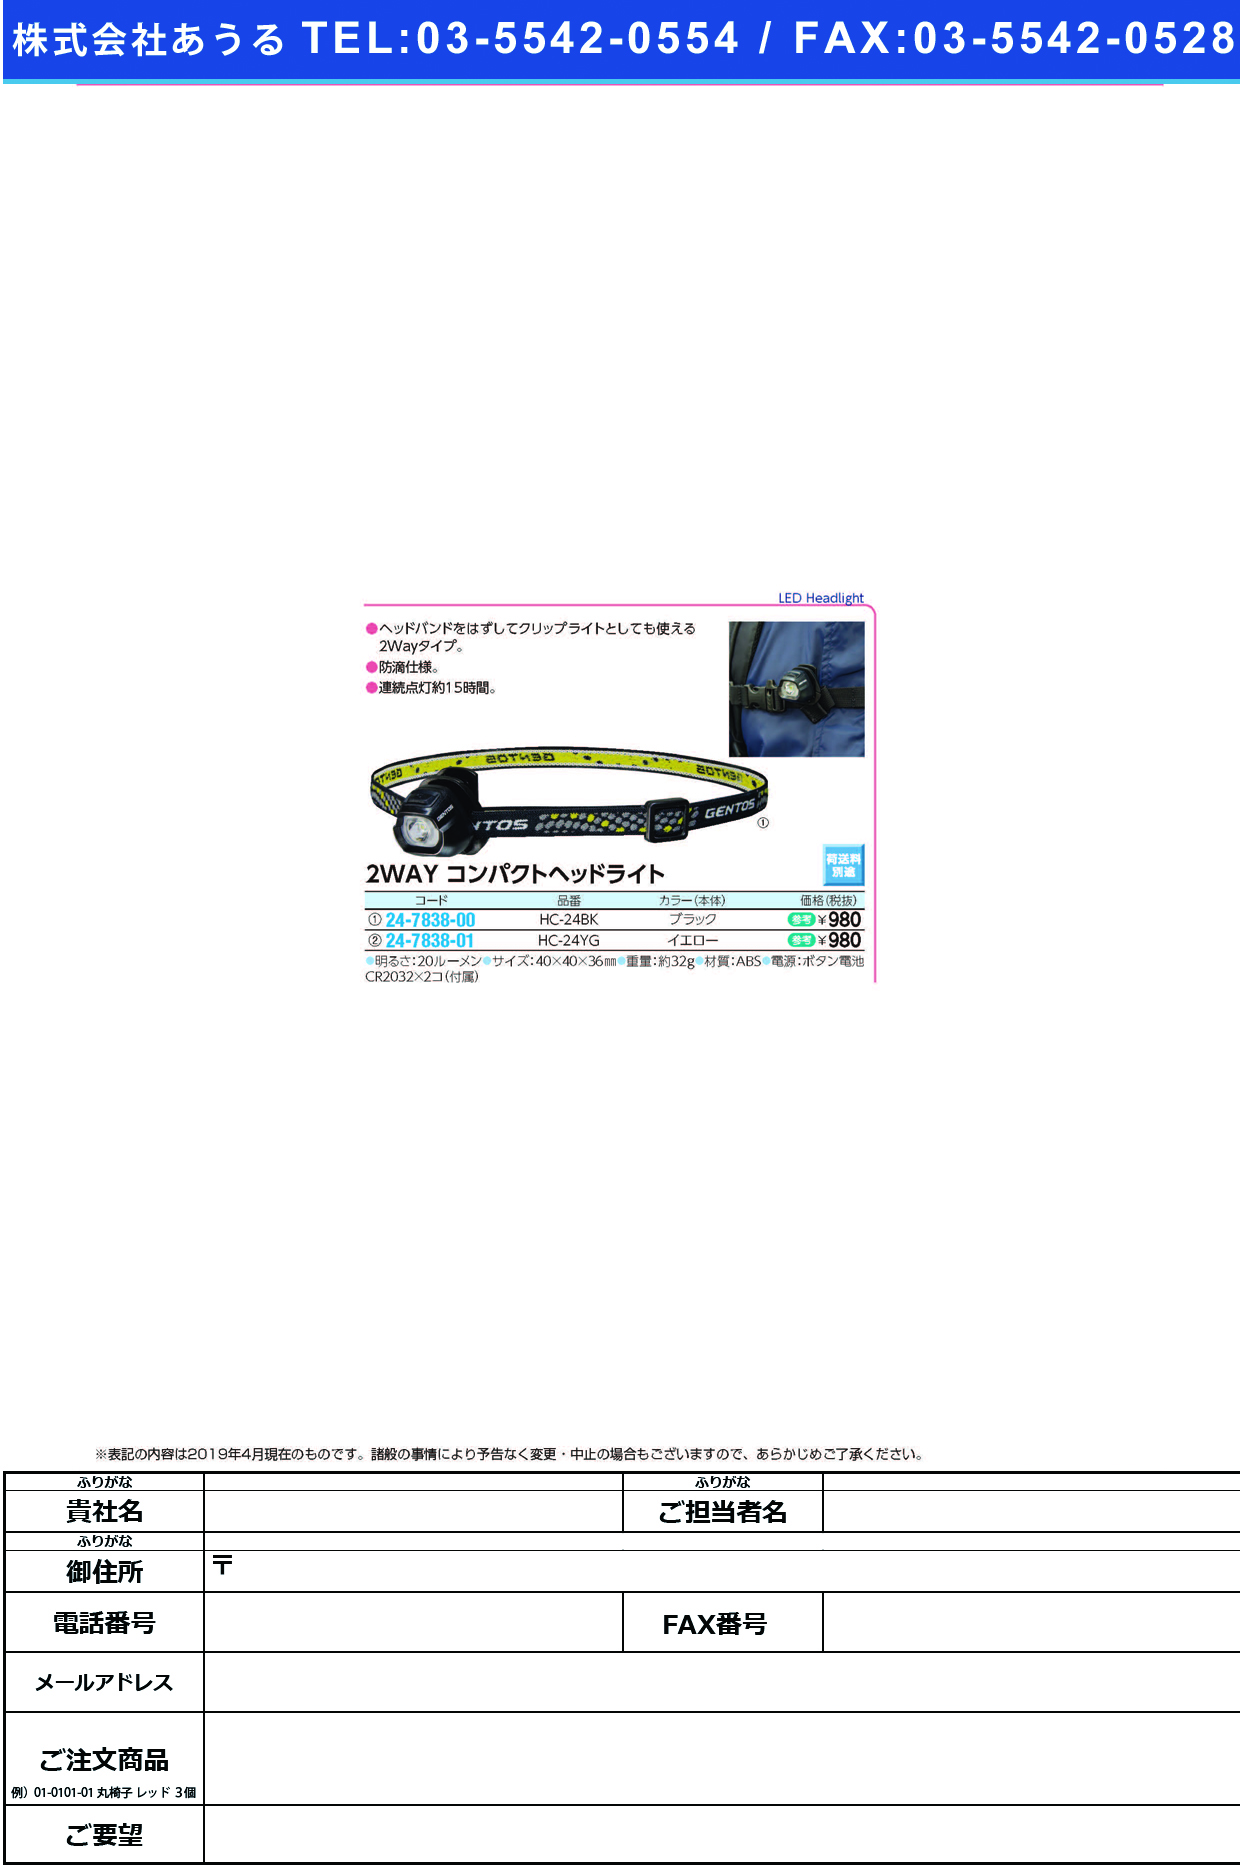 (24-7838-01)コンパクトヘッドライトHC-24YG ｺﾝﾊﾟｸﾄﾍｯﾄﾞﾗｲﾄ(ジェントス)【1個単位】【2019年カタログ商品】